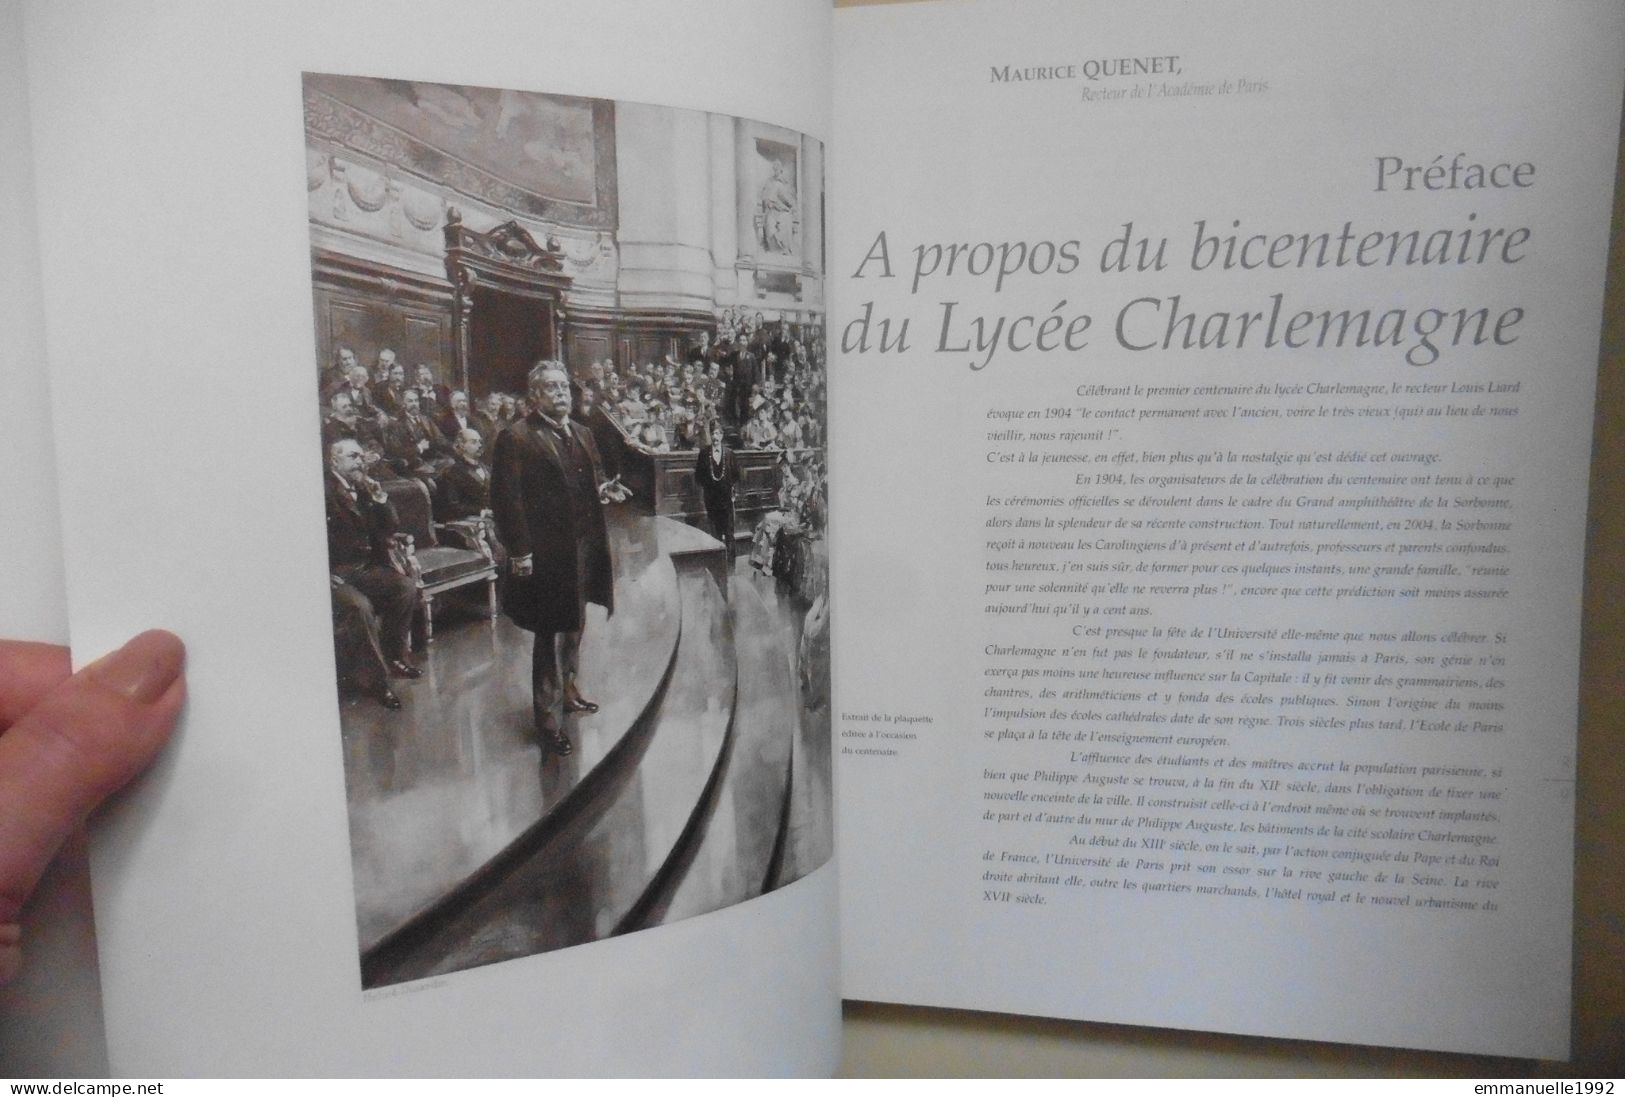 Livre Le Lycée Charlemagne Au Marais à Paris 1804-2004 Bicentenaire Du Lycée - Histoire